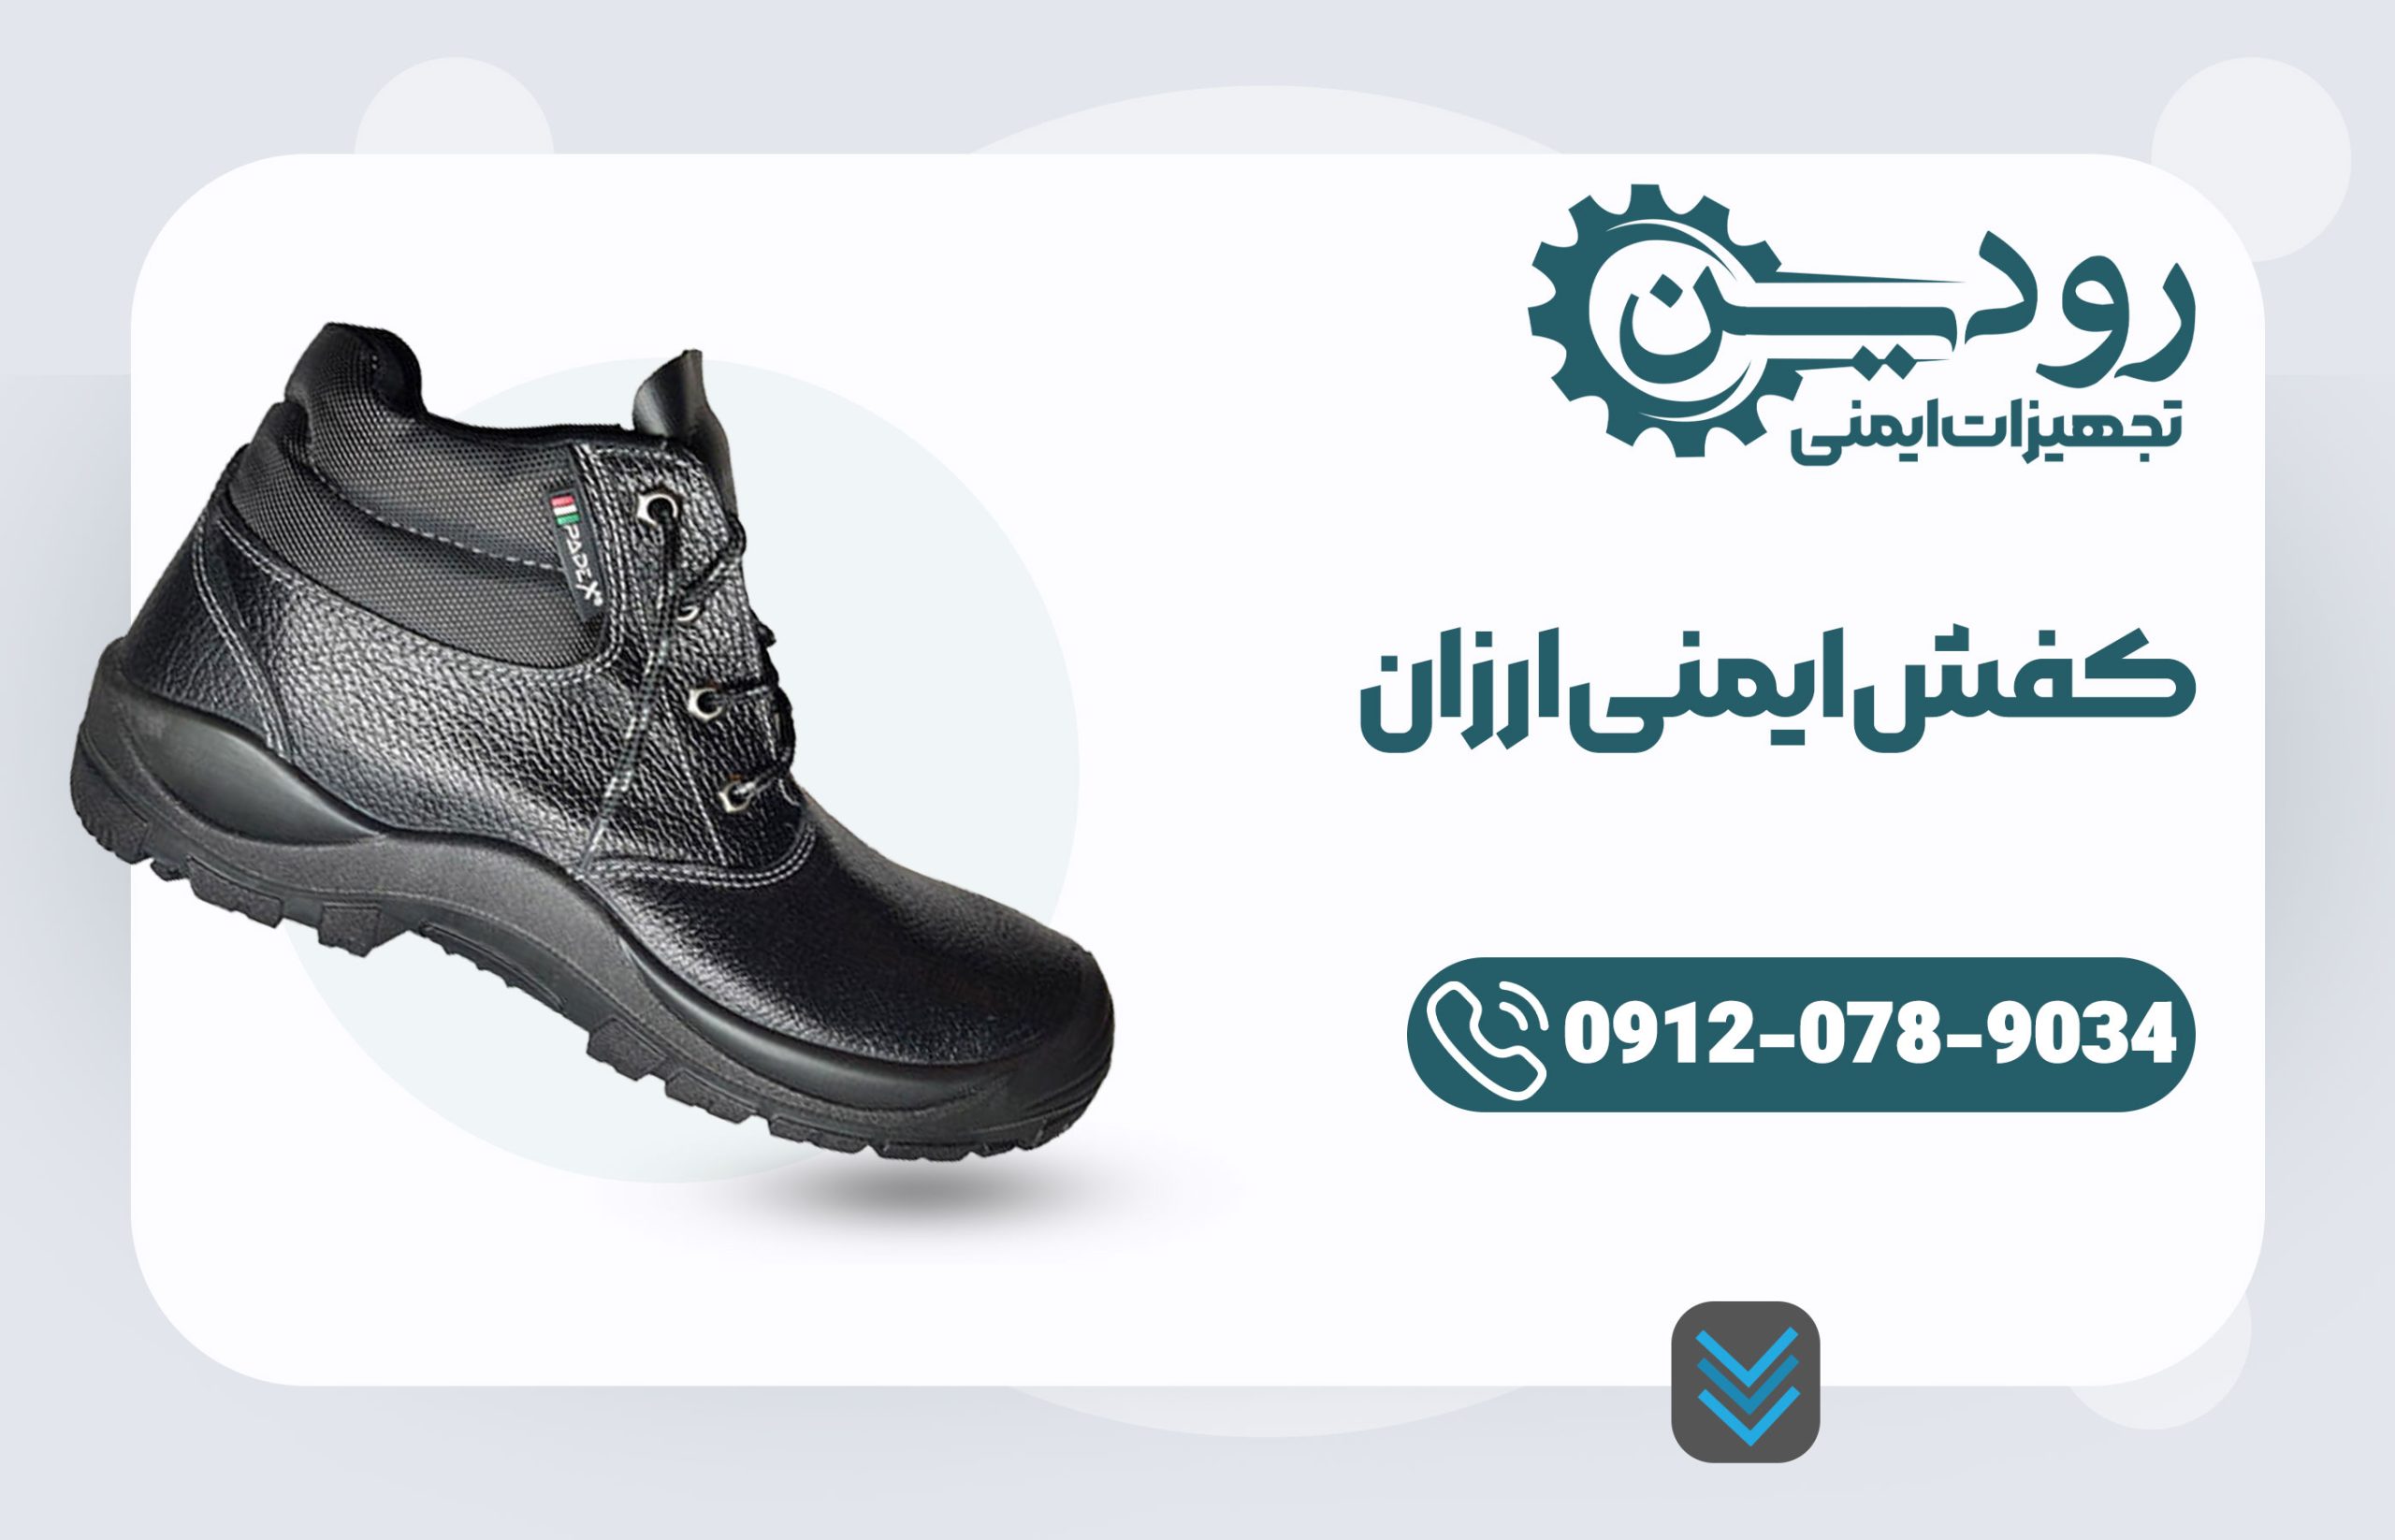 فروش کفش ایمنی ارزان مخصوص صادرات به کشور هایی مثل افغانستان و عراق انجام میشود.